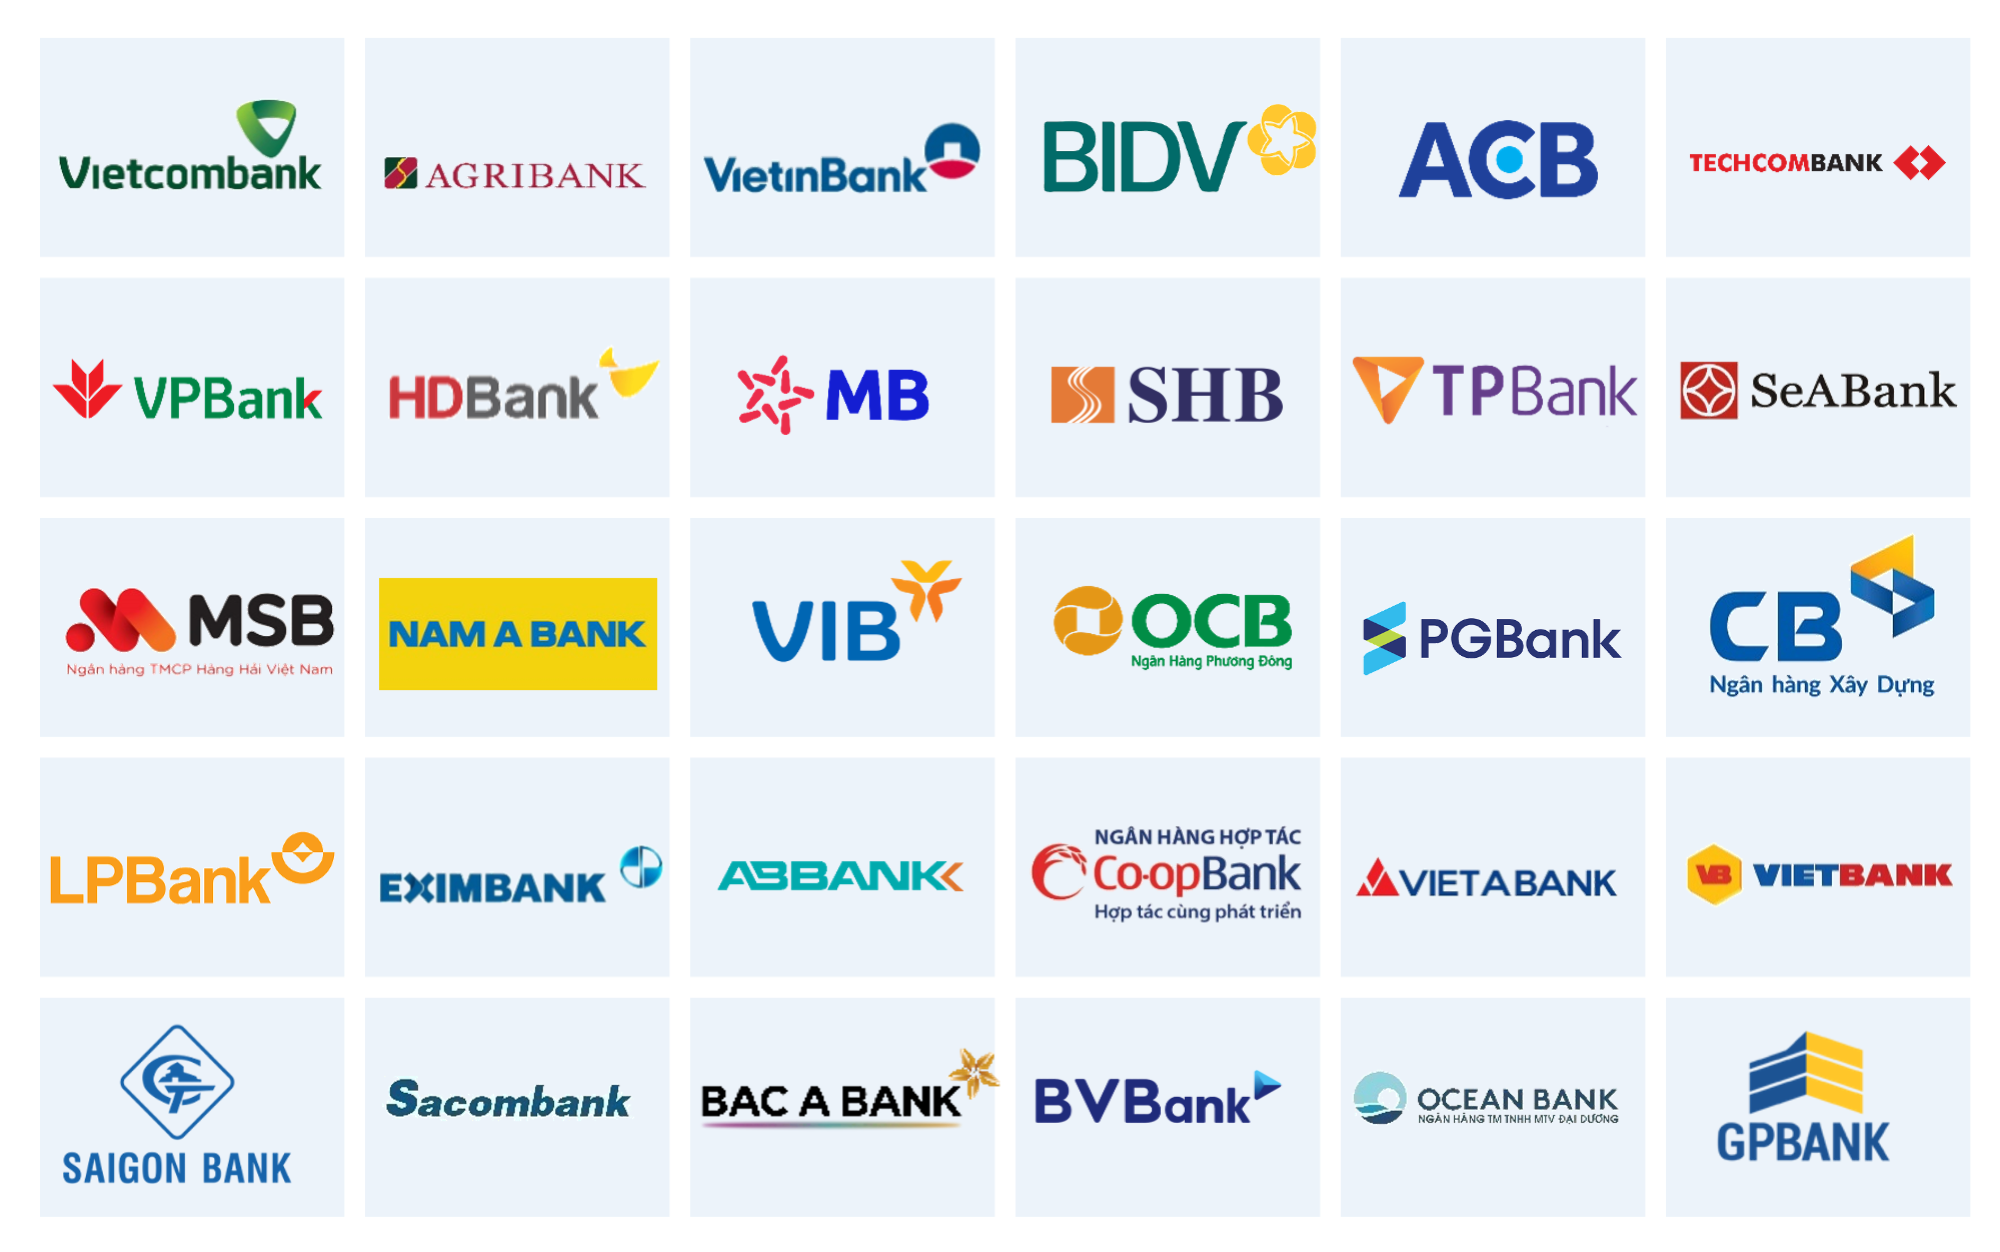 Trước thềm ĐHCĐ tháng 4: Điểm danh những ngân hàng hoàn thành mục tiêu kinh doanh- Ảnh 1.